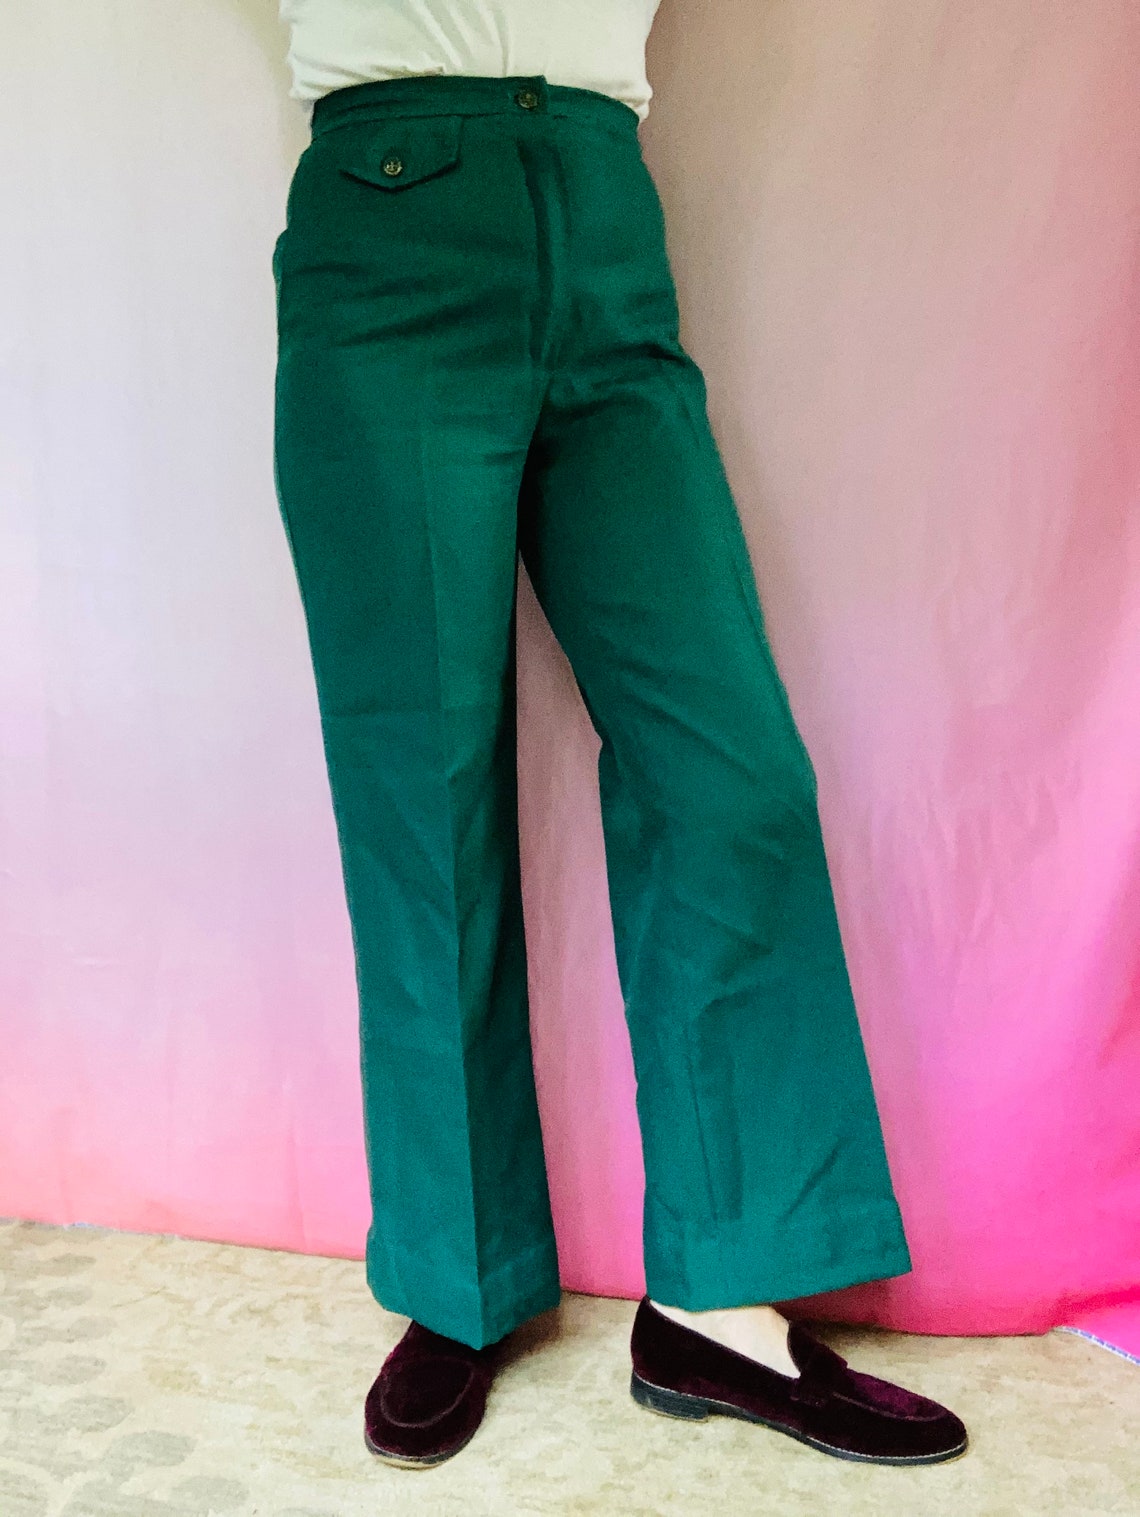 Vintage 70s Green Polyester slacks 28x28.5 | Etsy